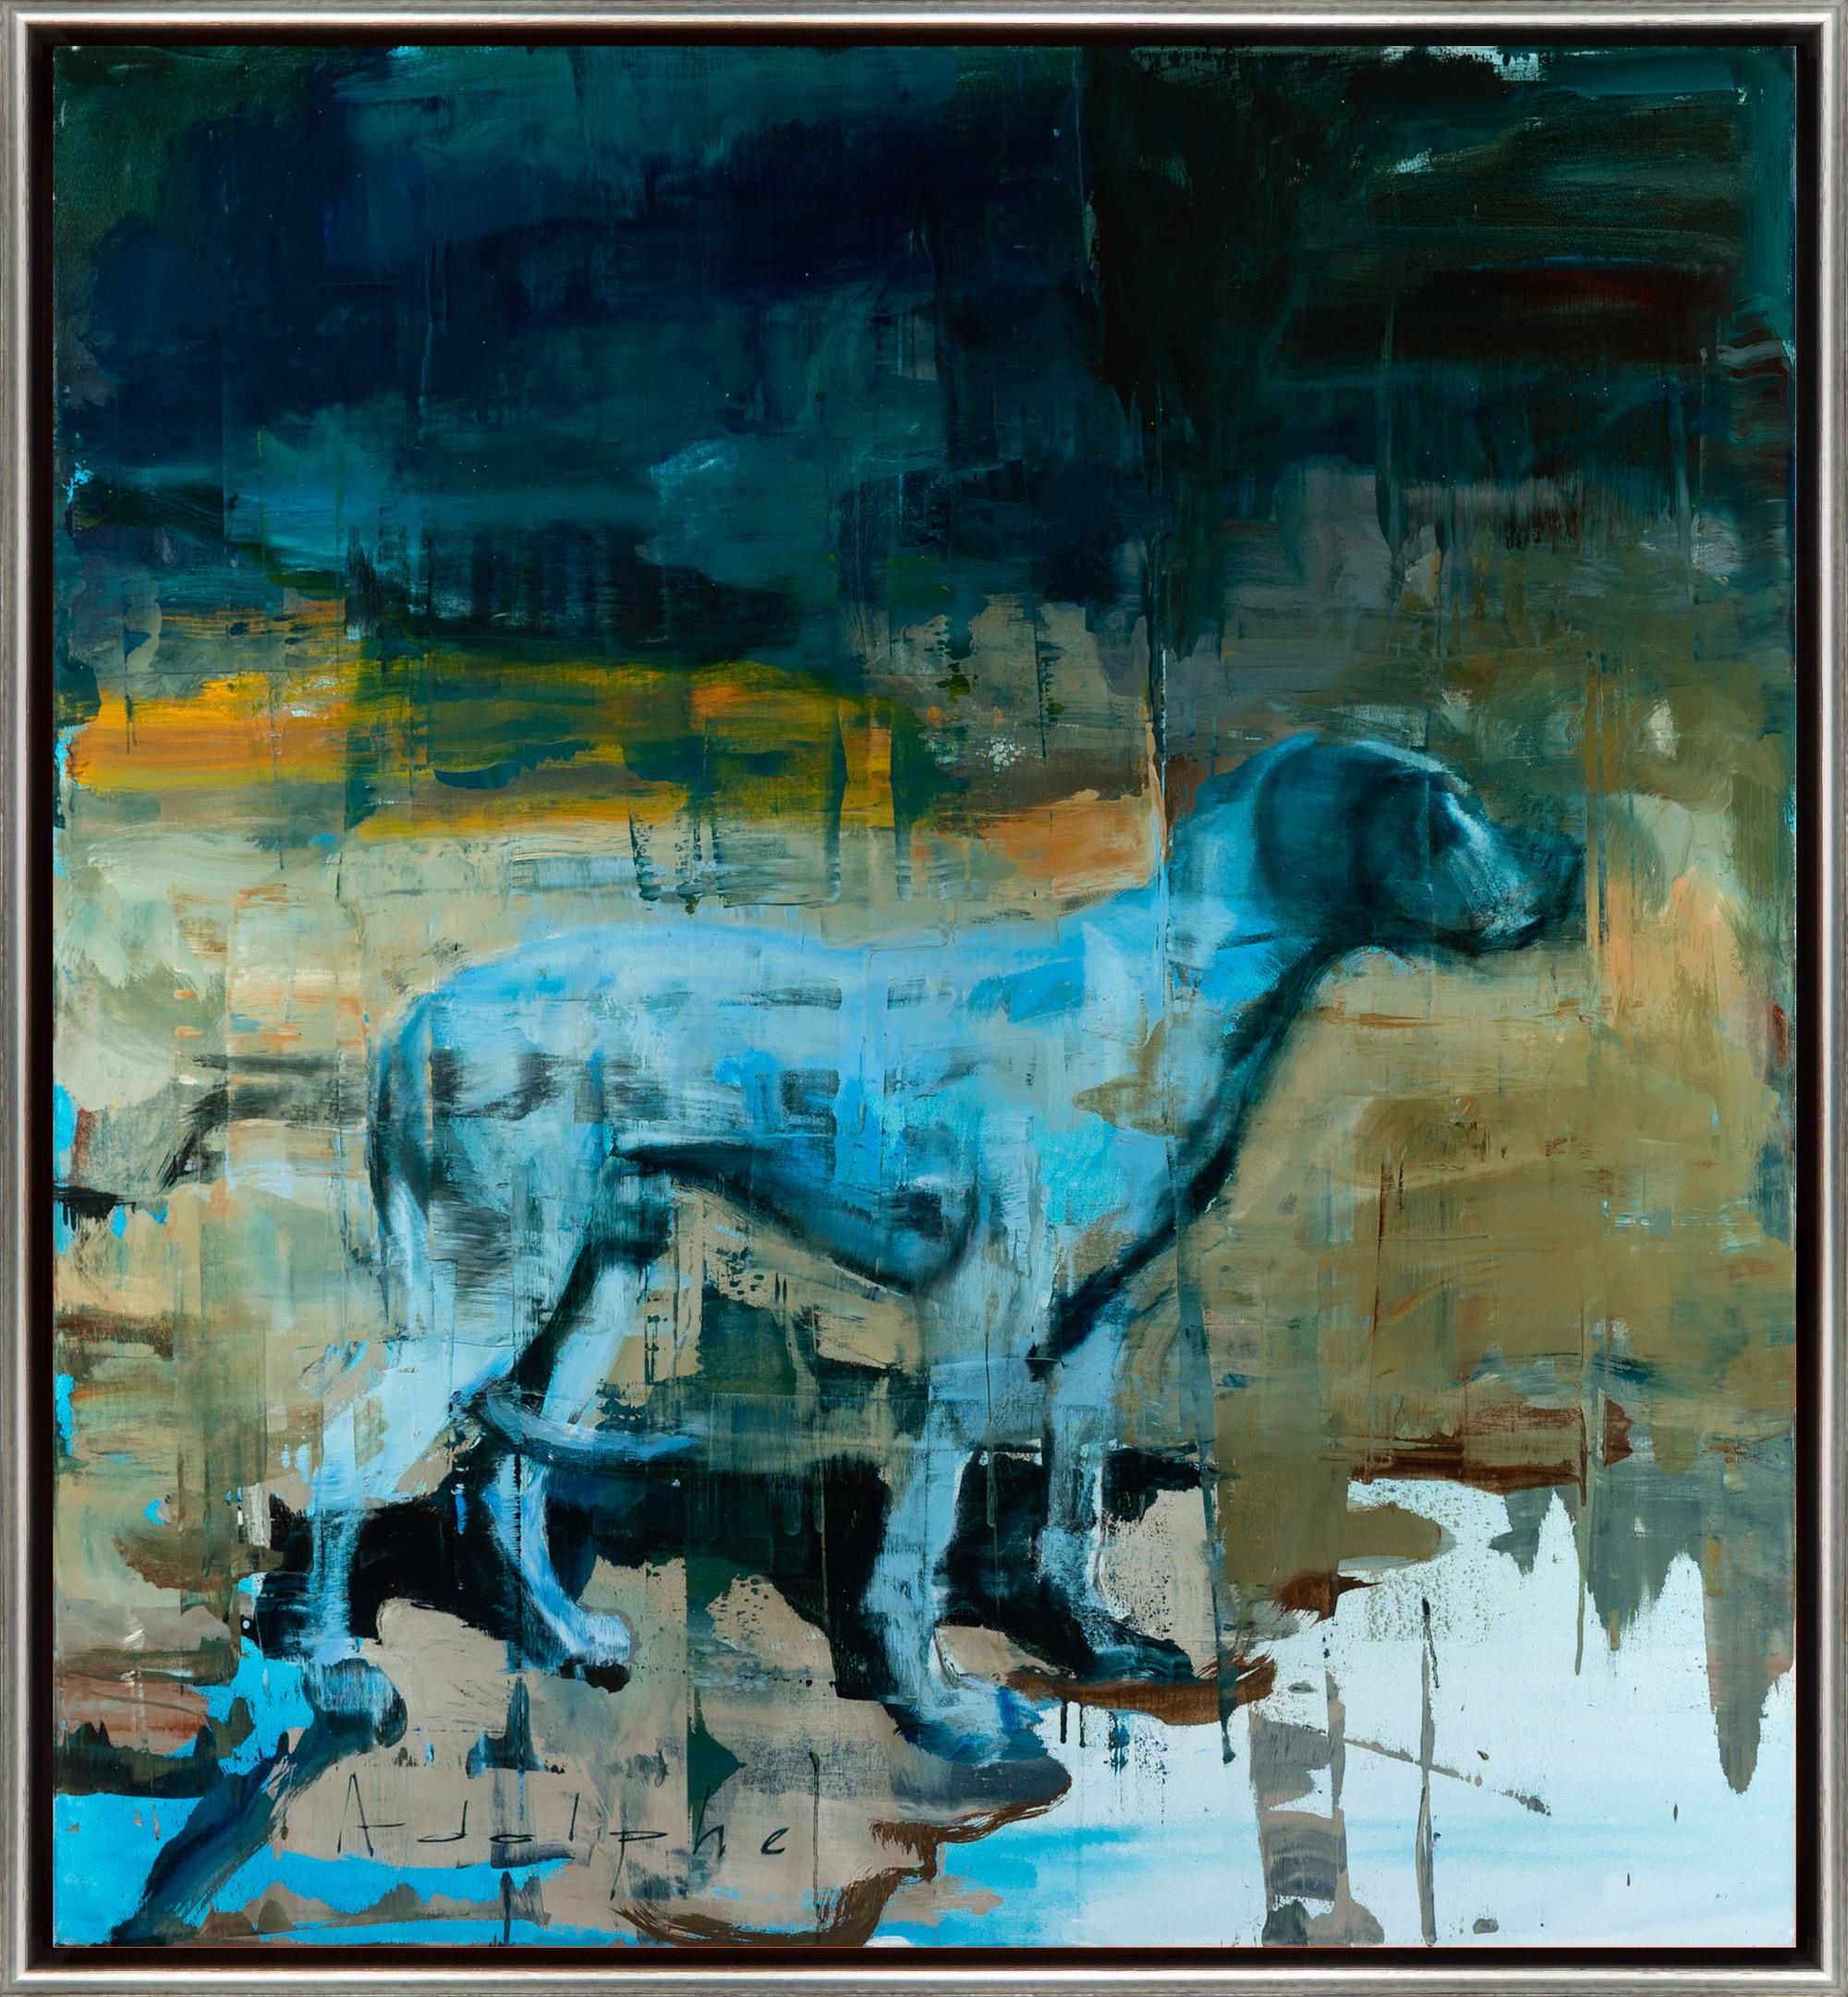 "The Entrance" Peinture abstraite à l'huile sur toile représentant un chien